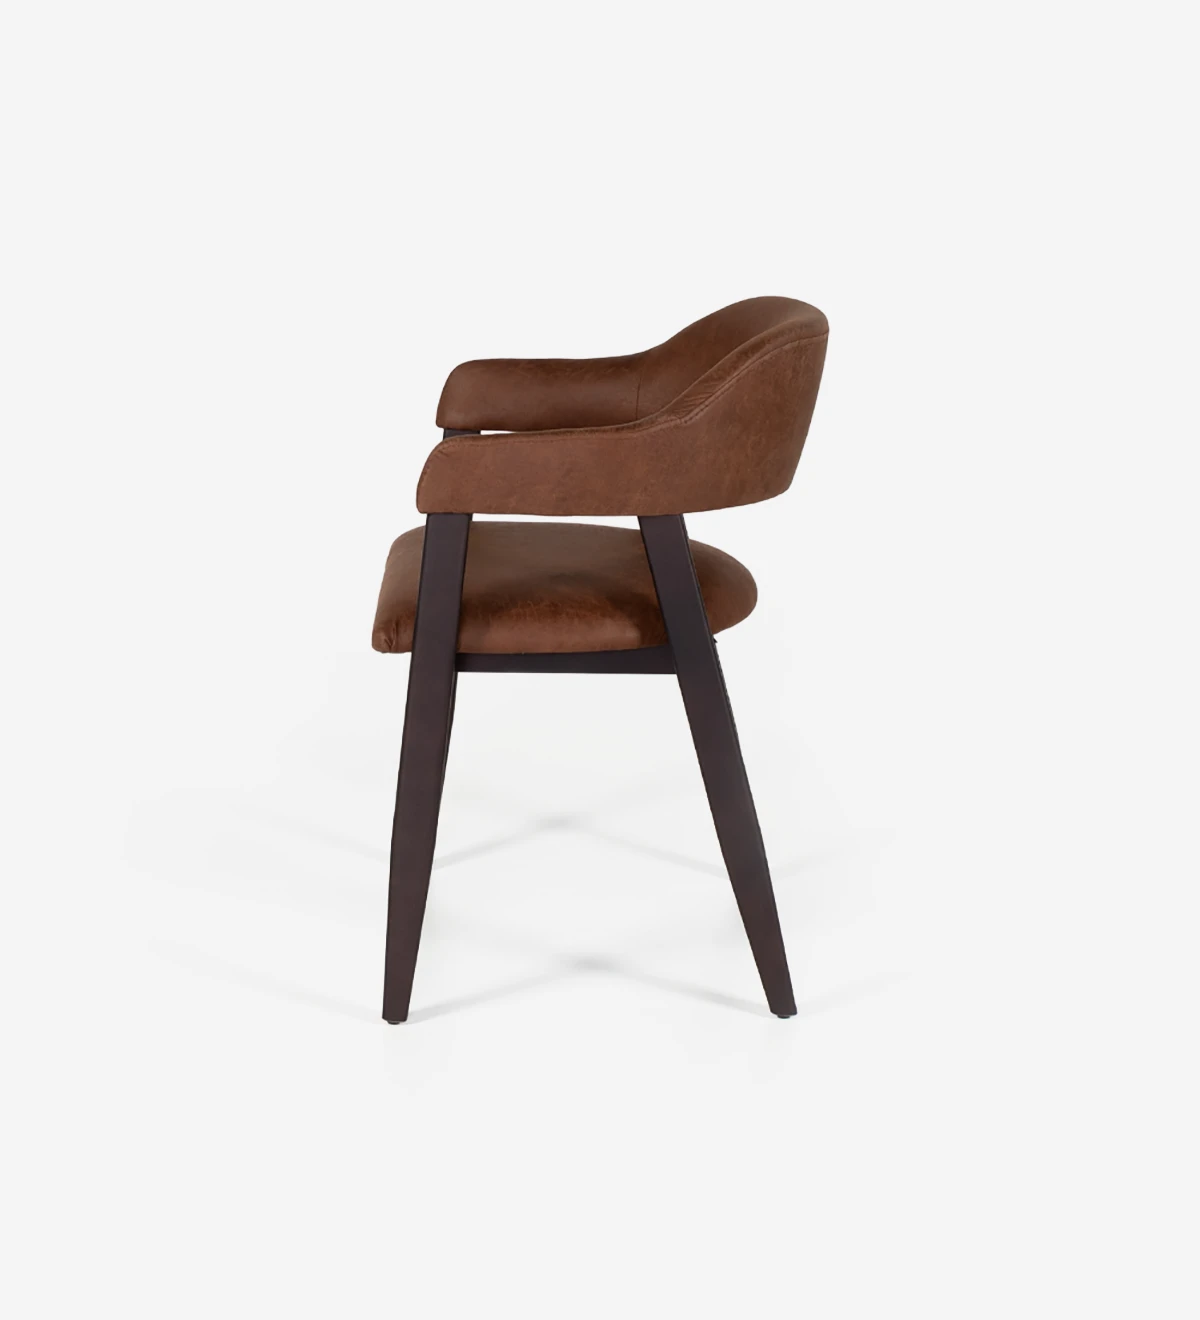 Chaise en bois de frêne brun foncé avec accoudoirs, assise et dossier rembourrés en tissu.